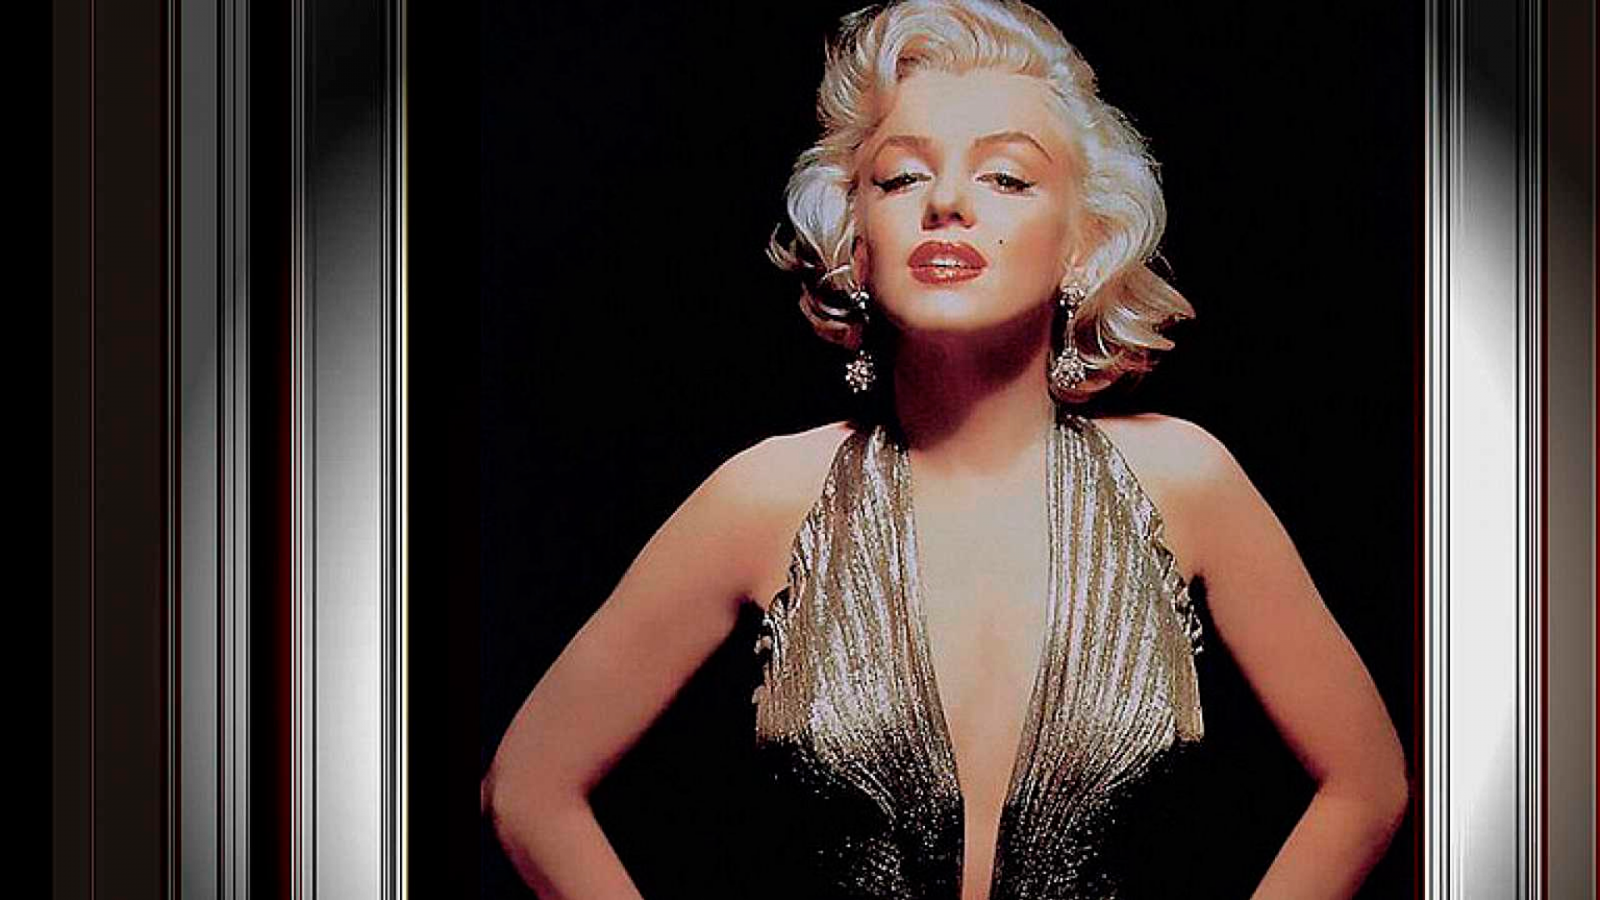 Mistério  As dúvidas sobre a morte de Marilyn Monroe que persistem até hoje